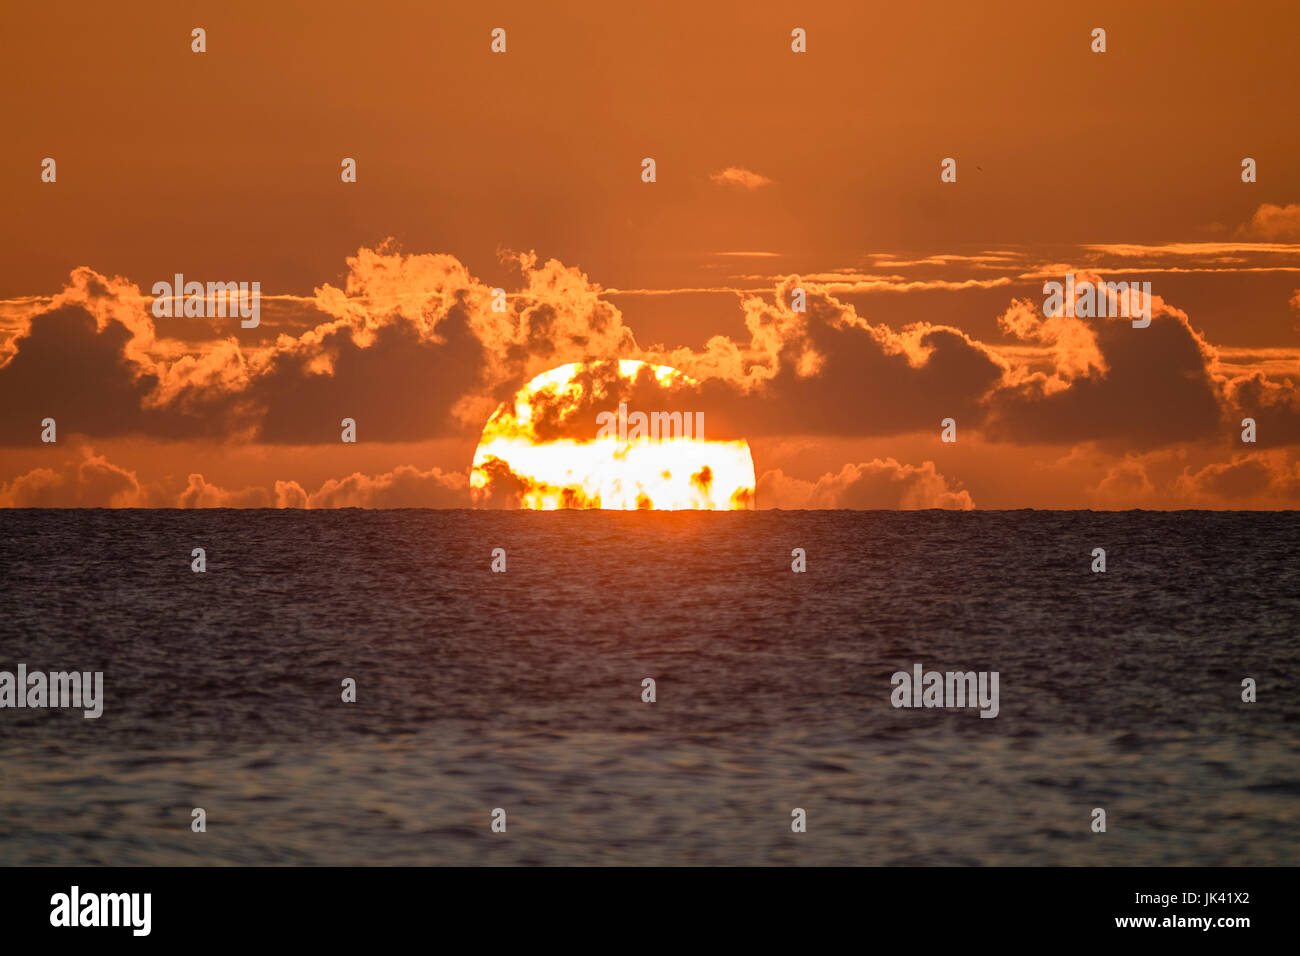 Sunset on horizon of ocean Stock Photo